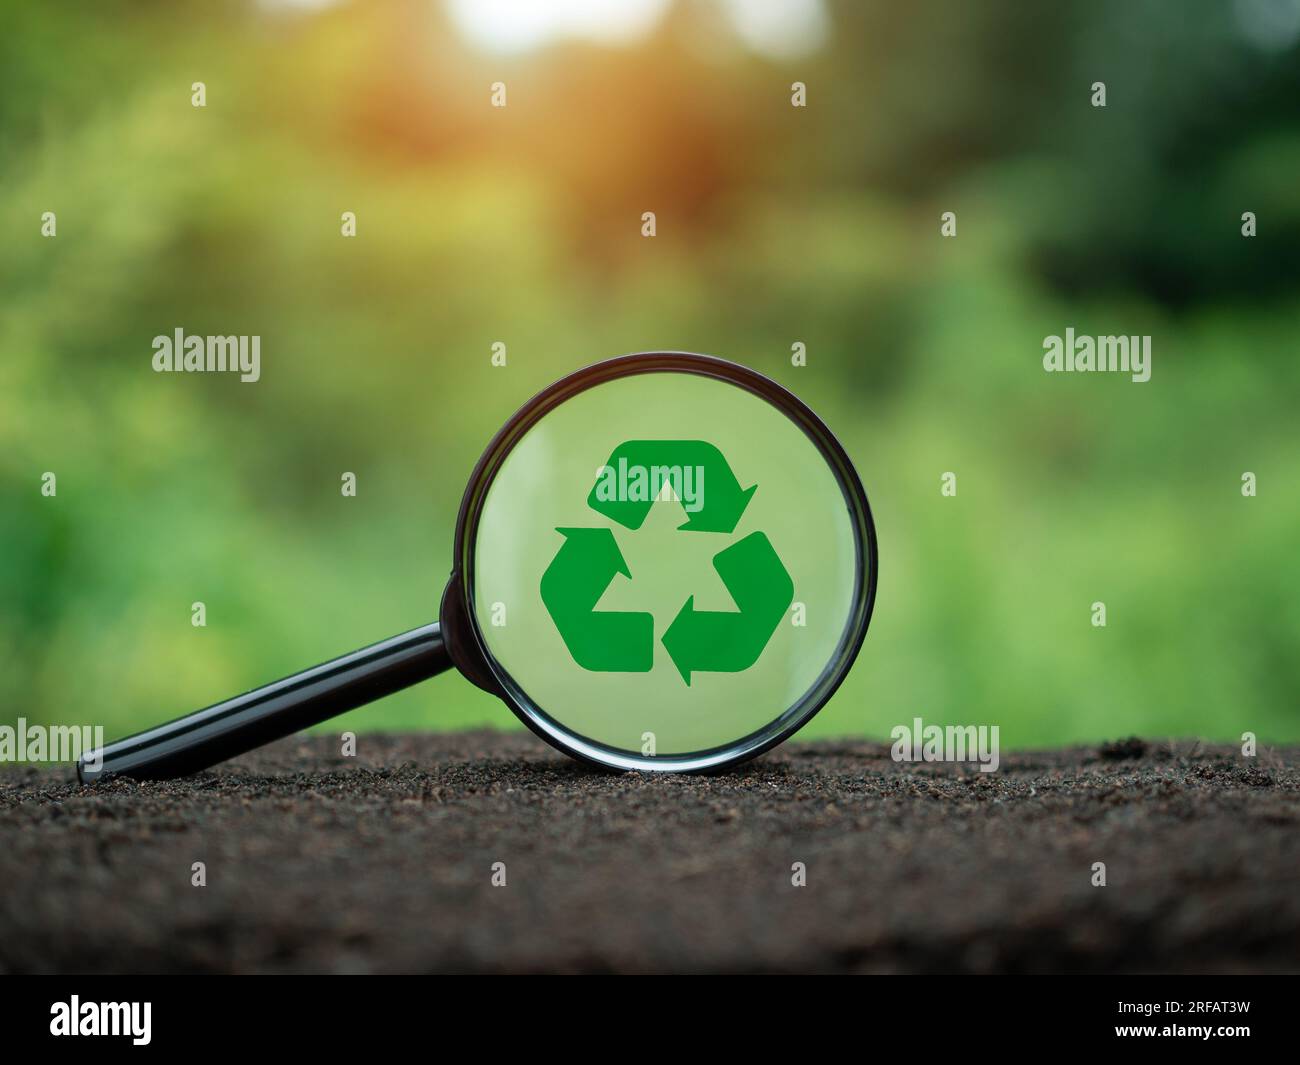 Concepts de réduction des déchets, pollution, réutilisation, utilisation efficace des ressources. Symbole de recyclage dans la loupe sur fond de nature. Banque D'Images